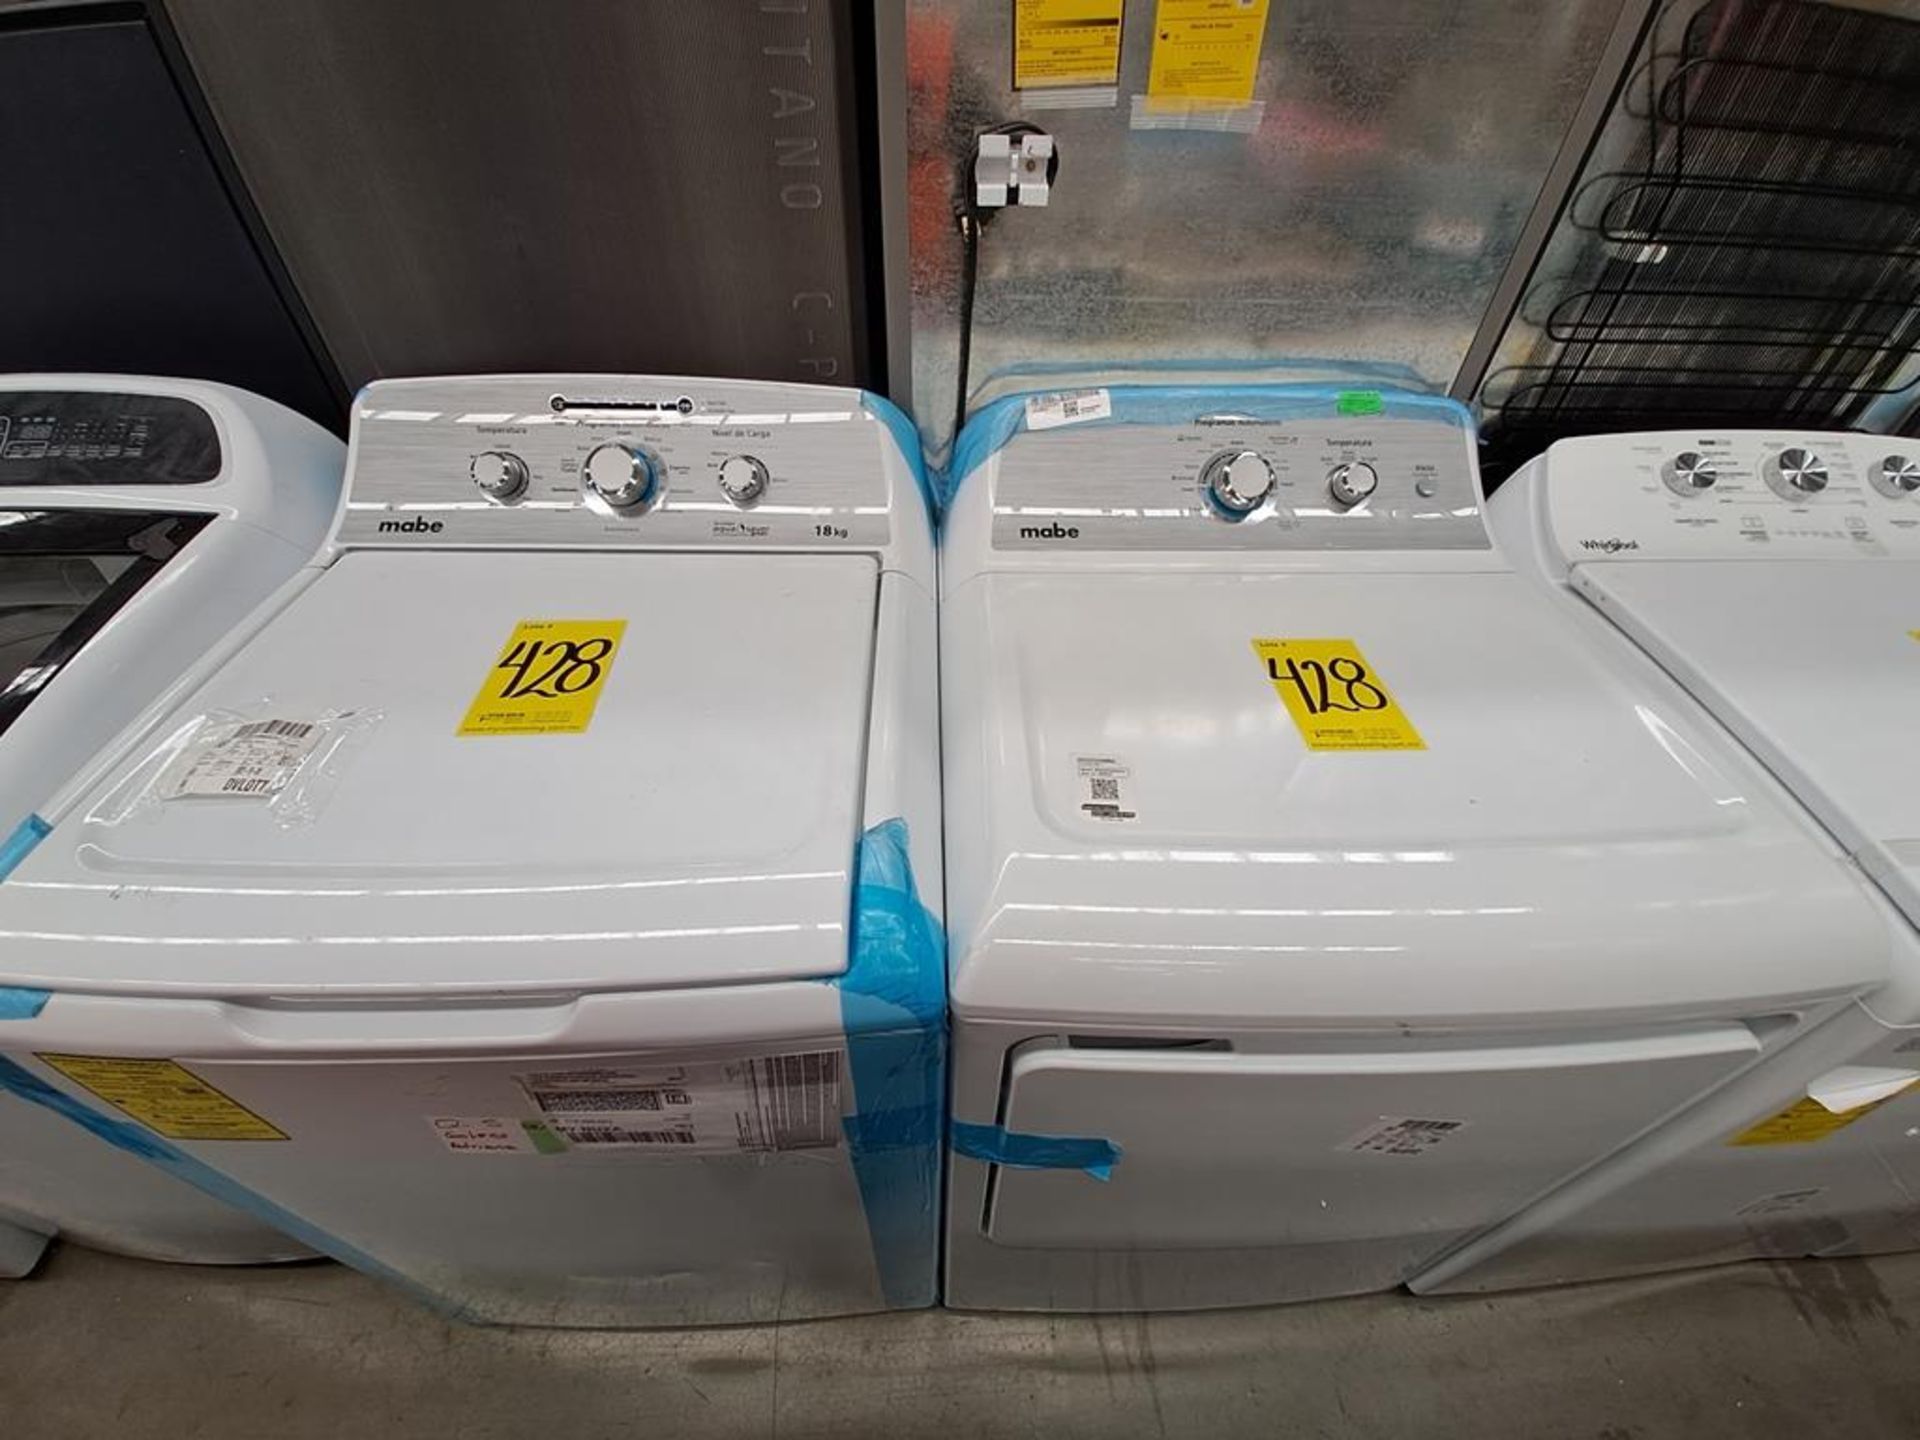 Lote de lavadora y secadora contiene: 1 Lavadora de 18 KG Marca MABE, Modelo LMA78113CBAB0, Serie S